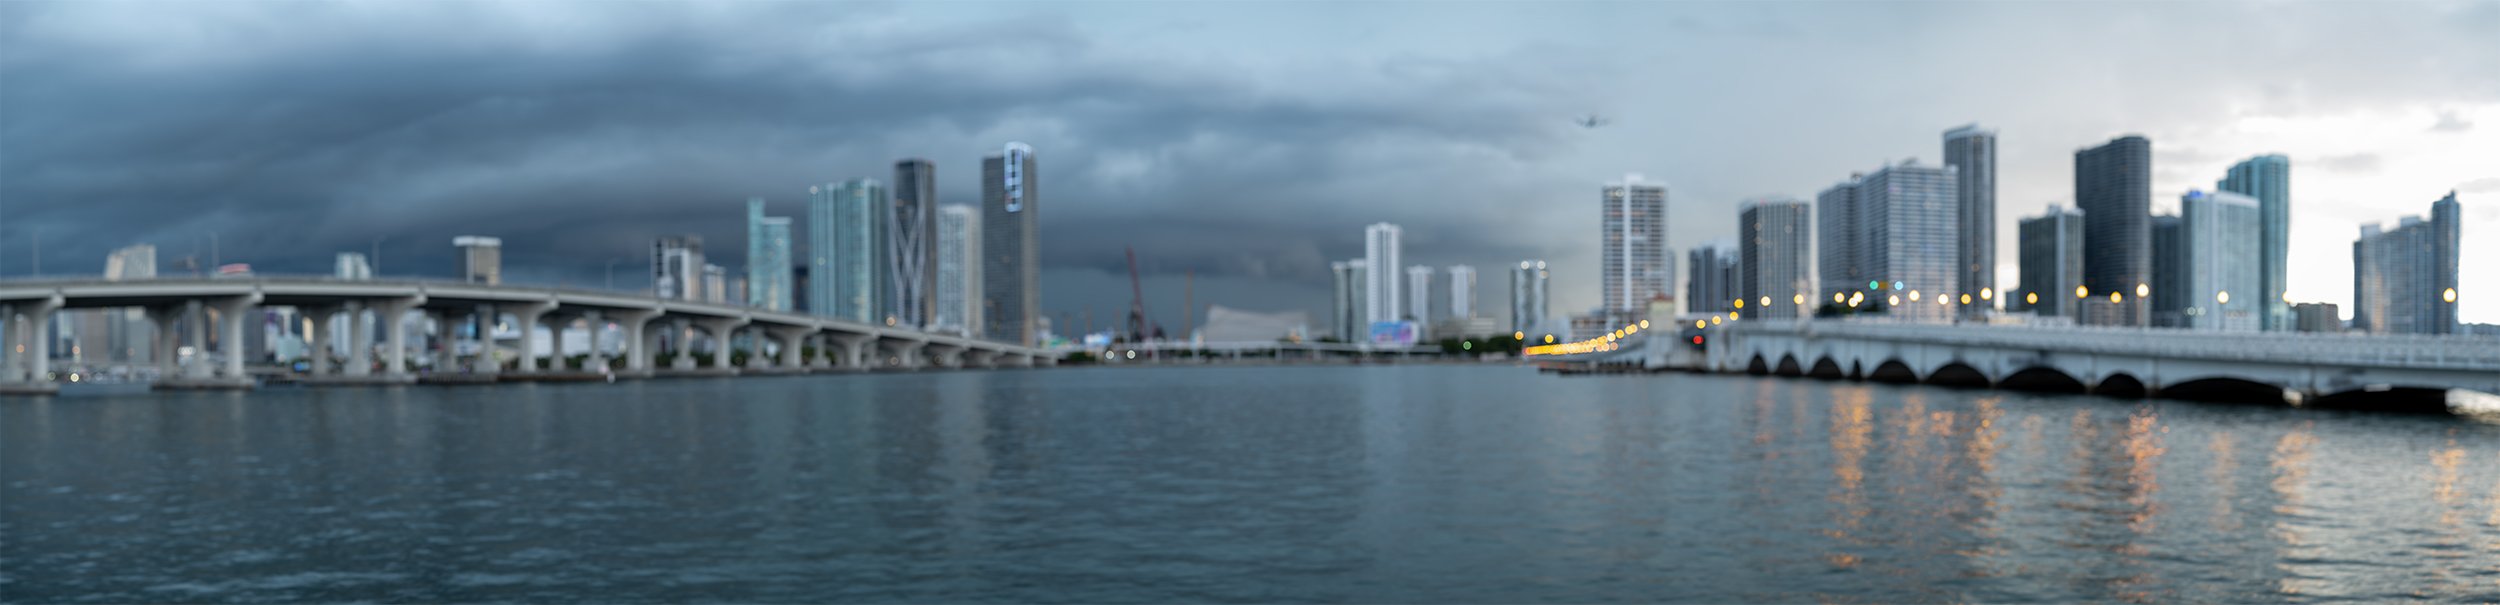 Miami Skyline #141918